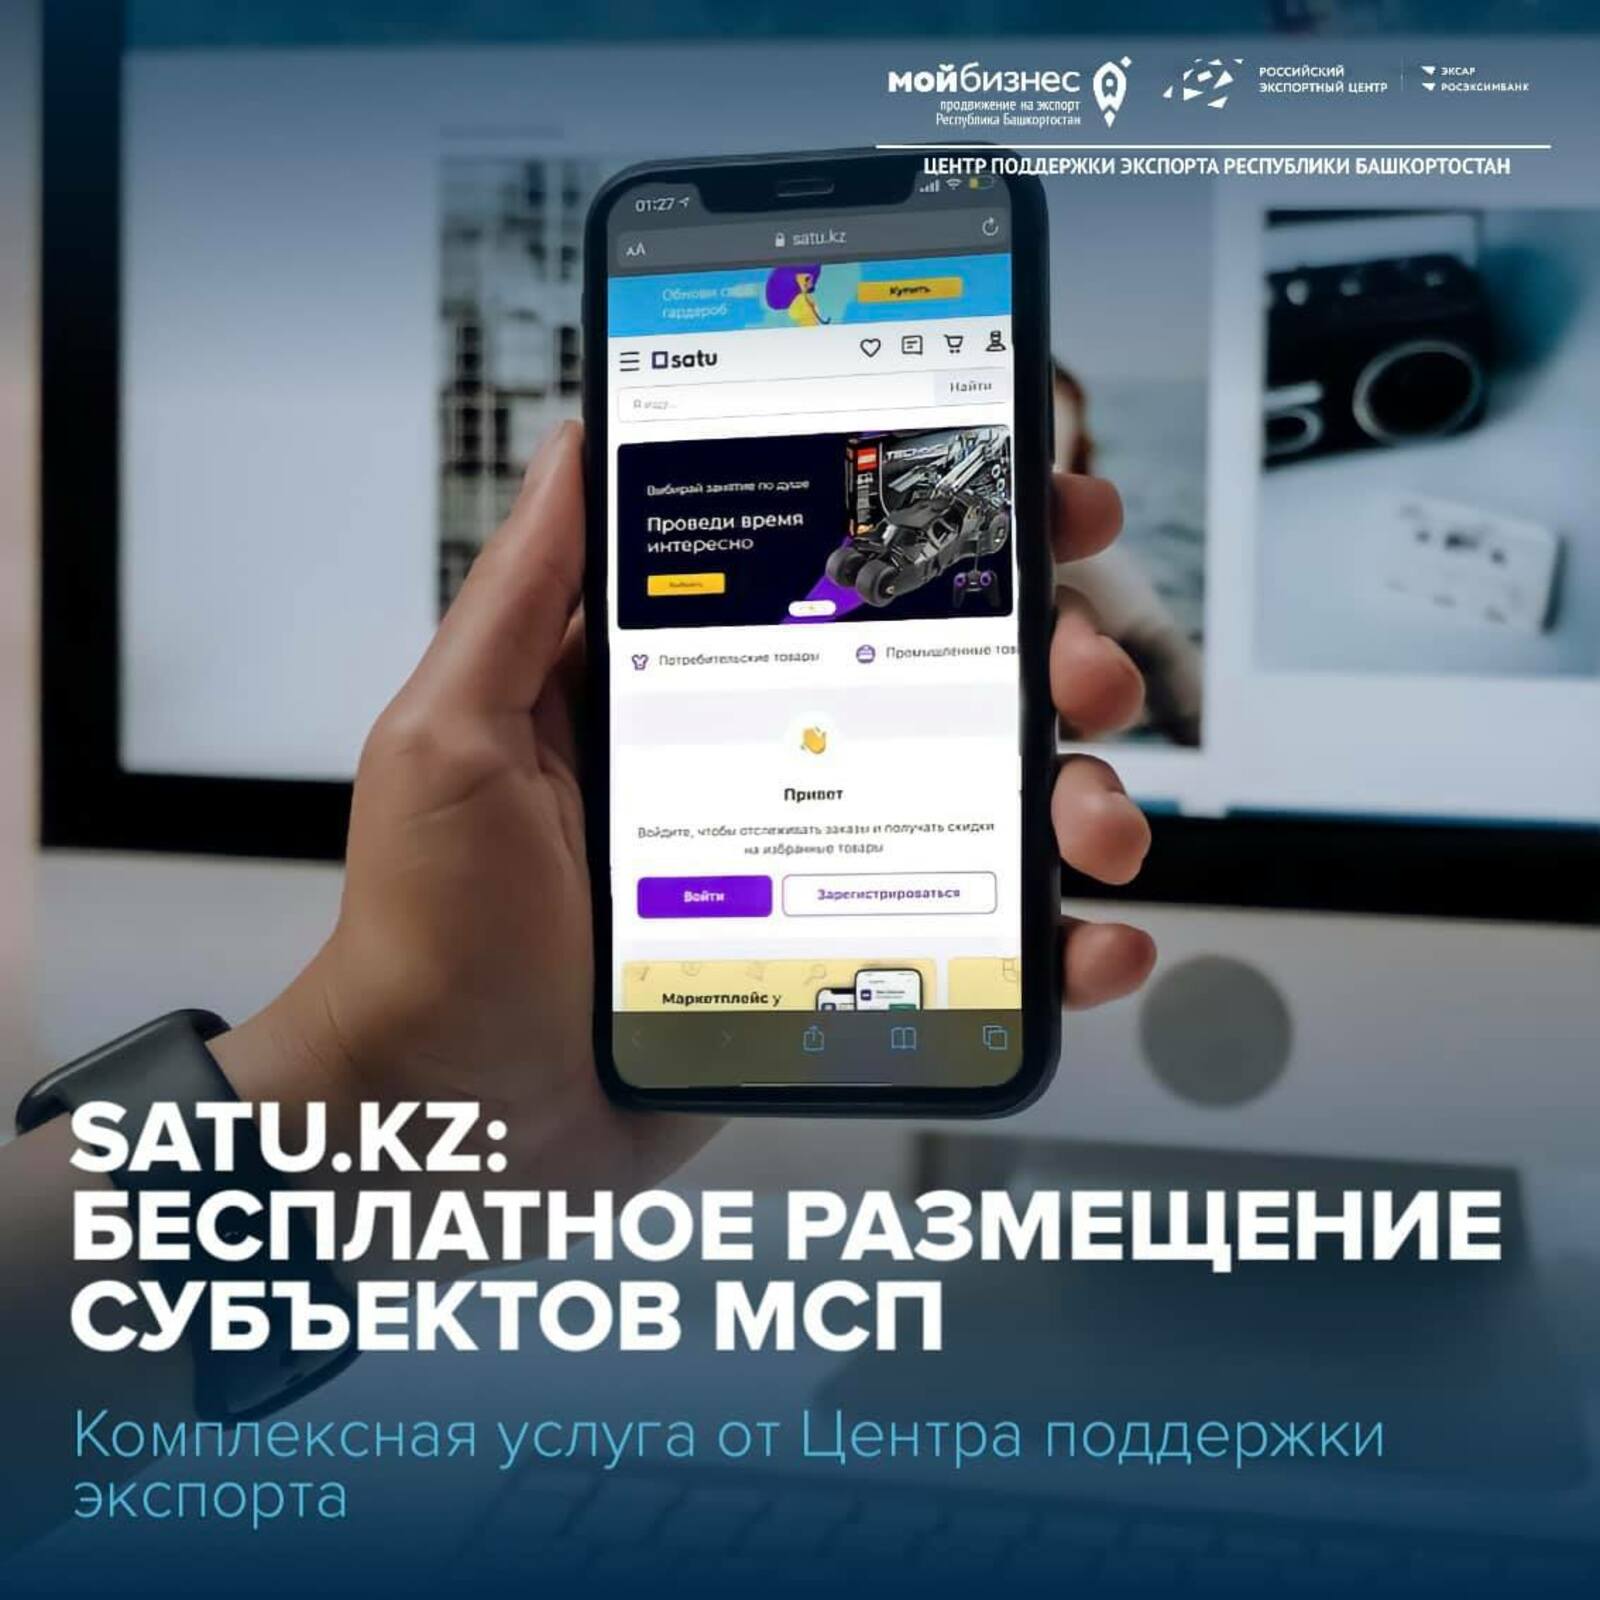 Бесплатное размещение вашей компании на крупнейшем маркетплейсе Казахстана Satu.kz